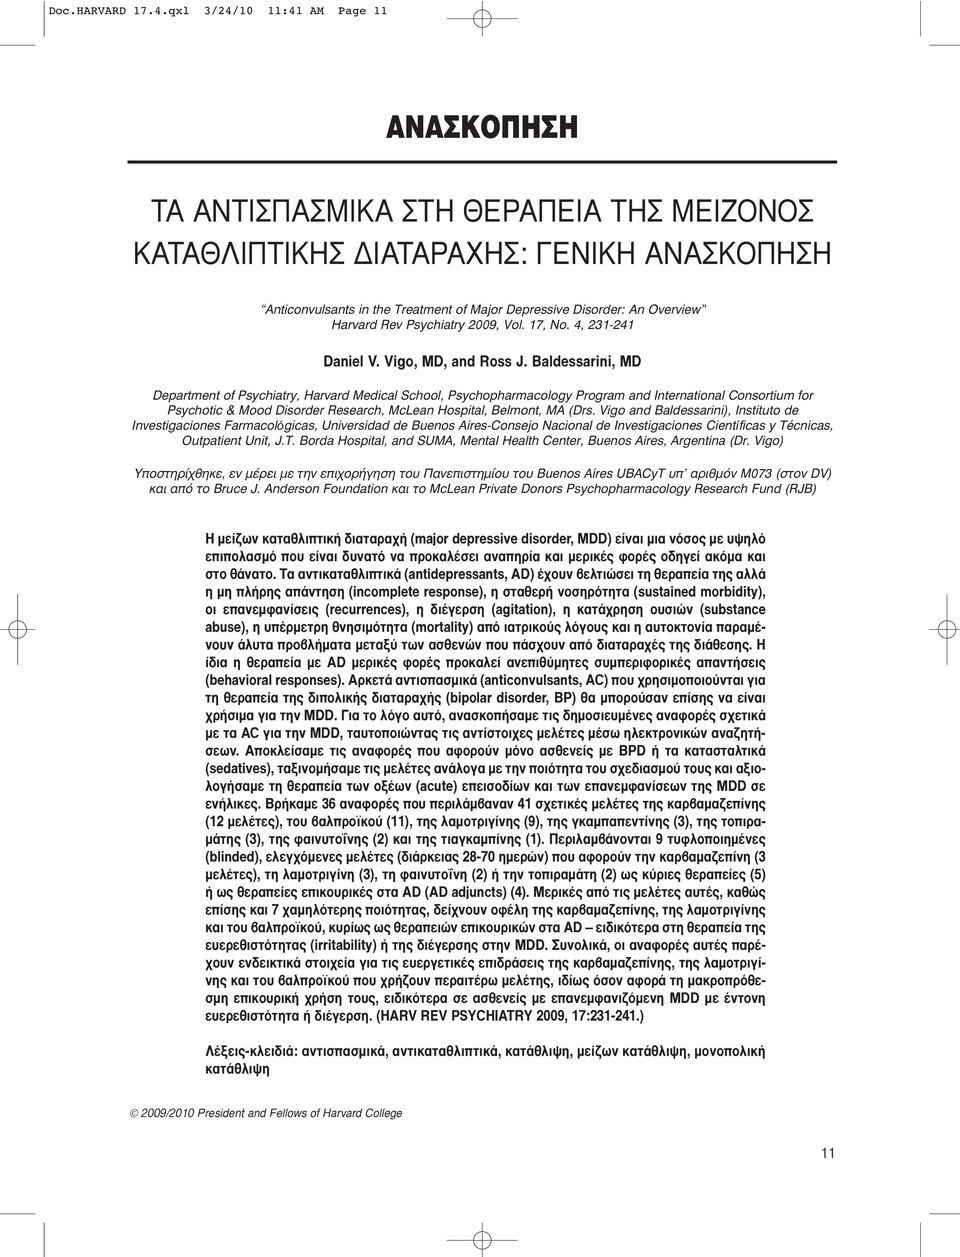 Overview 2009, Vol. 17, No. 4, 231-241 Daniel V. Vigo, MD, and Ross J.